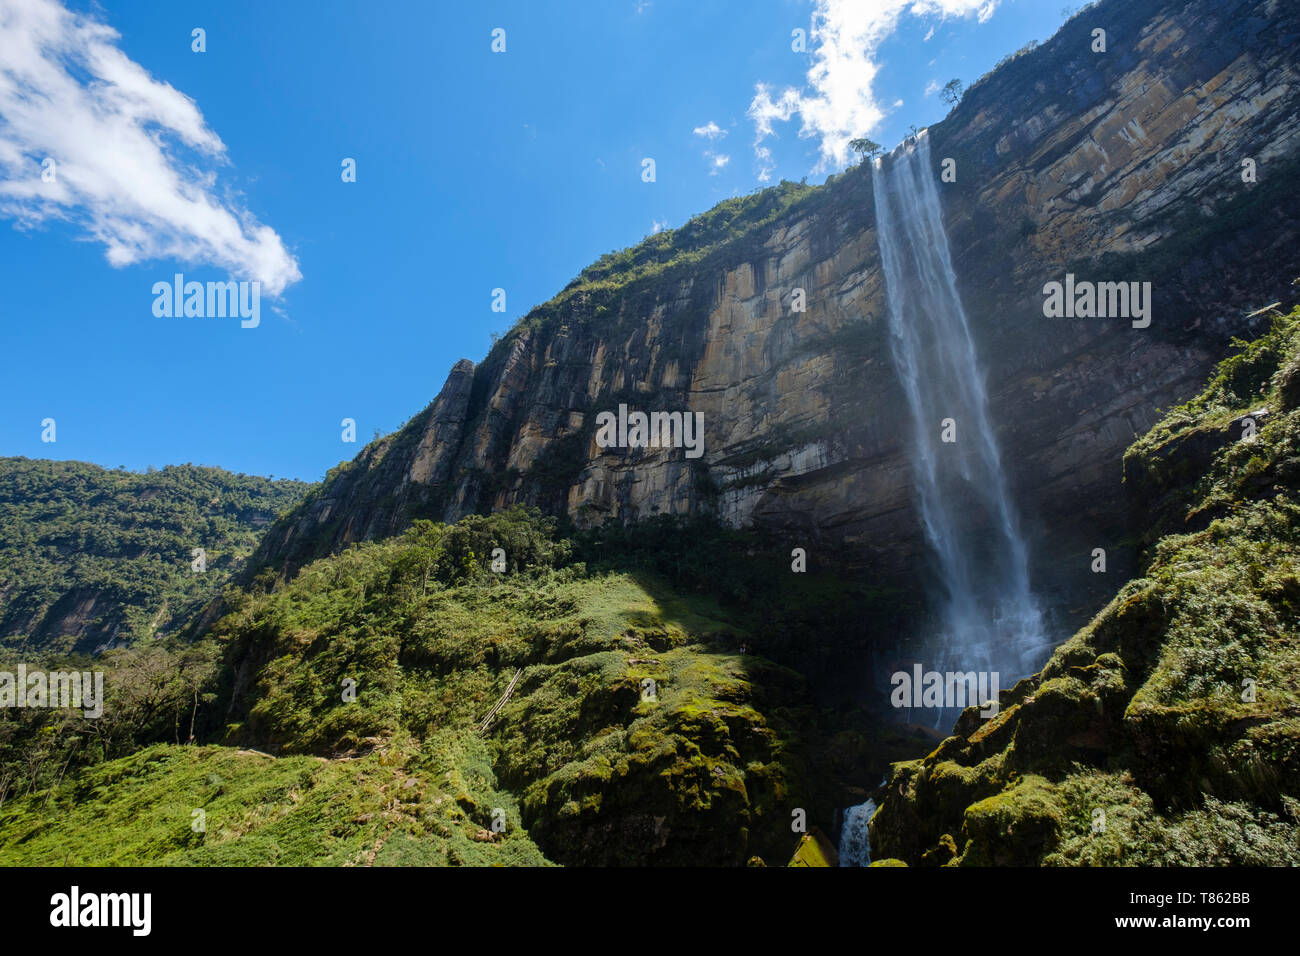 Gocta Wasserfall Wasserfall 771 Meter (2.530 ft) hoch auf der Dschungel der Provinz Chachapoyas, Amazonas Region, Peru Stockfoto